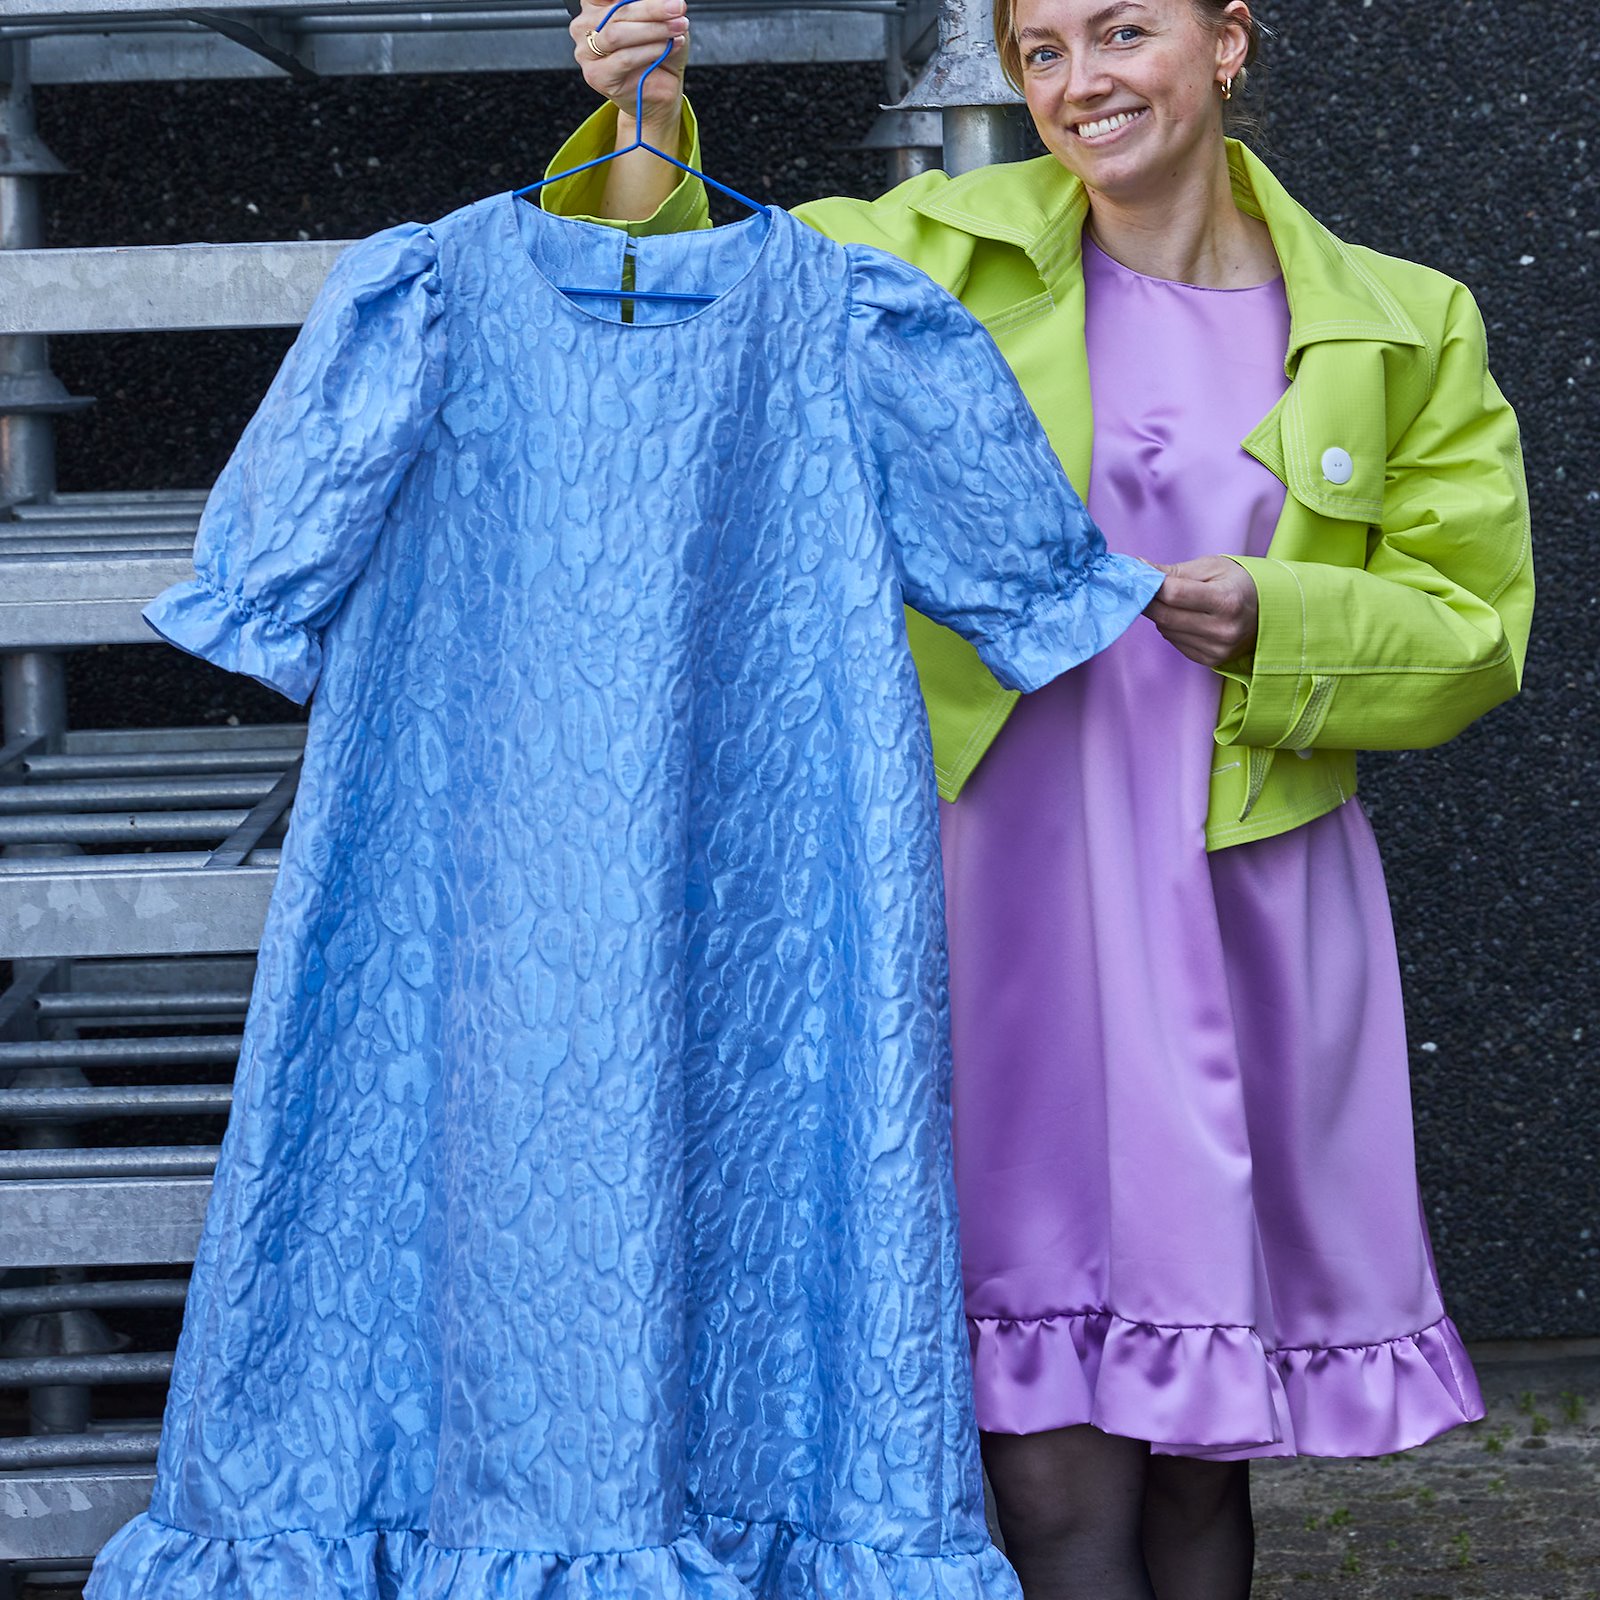 Eigenes Nähanleitung drucken: A-dress with puff sleeve #pernilledress DIY2401_pack_c.jpg